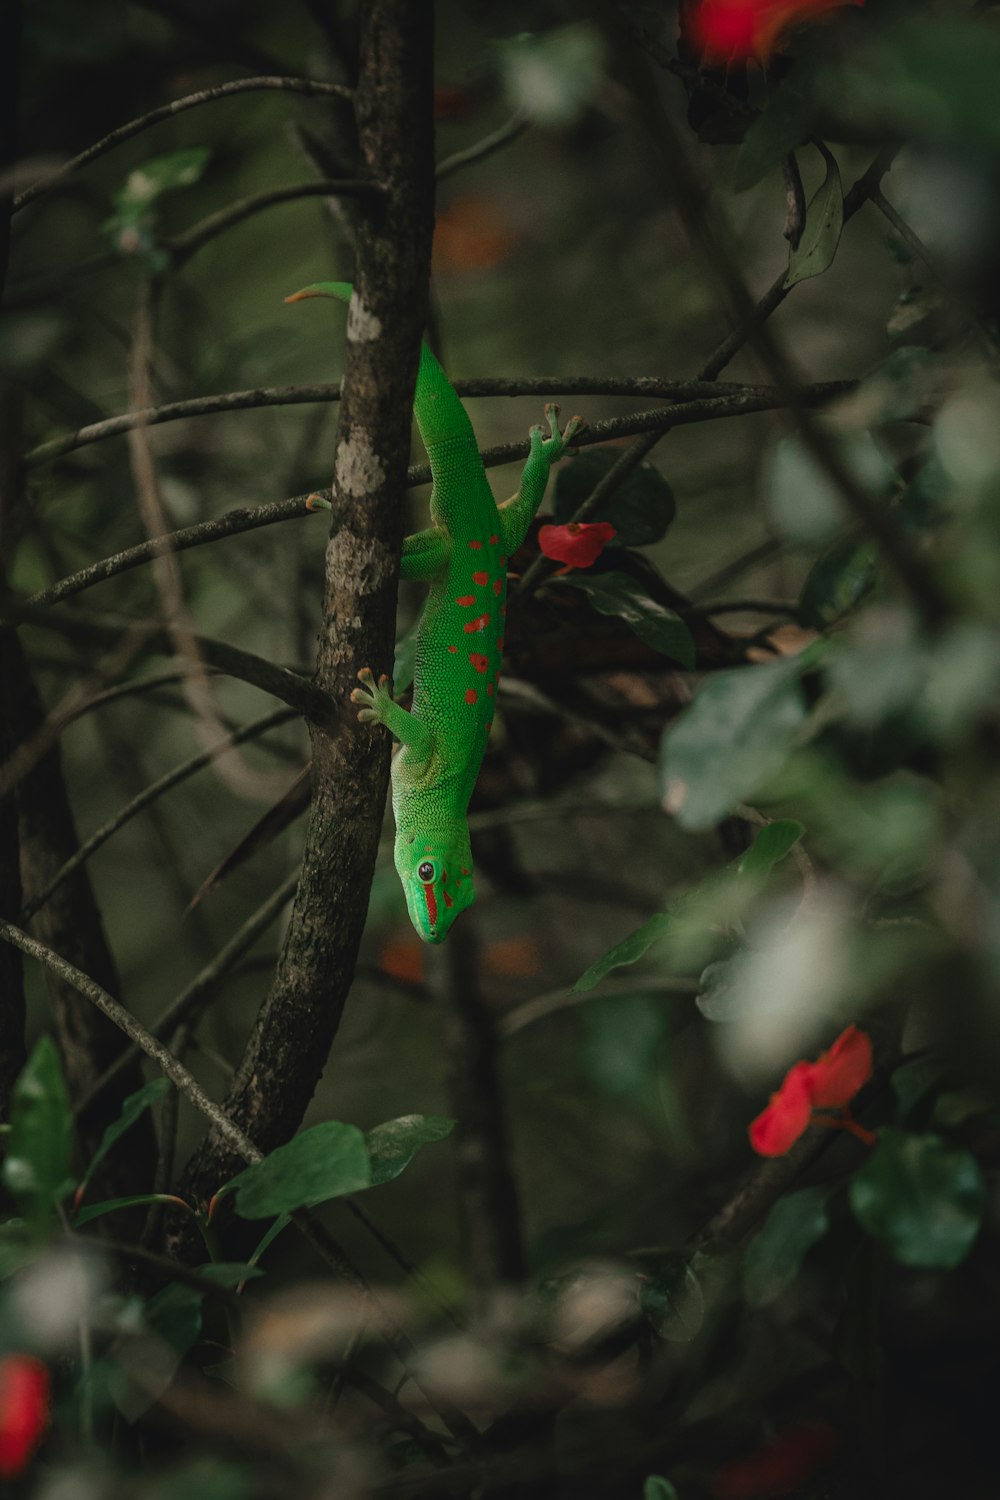 a green gecko climbing up a tree branch